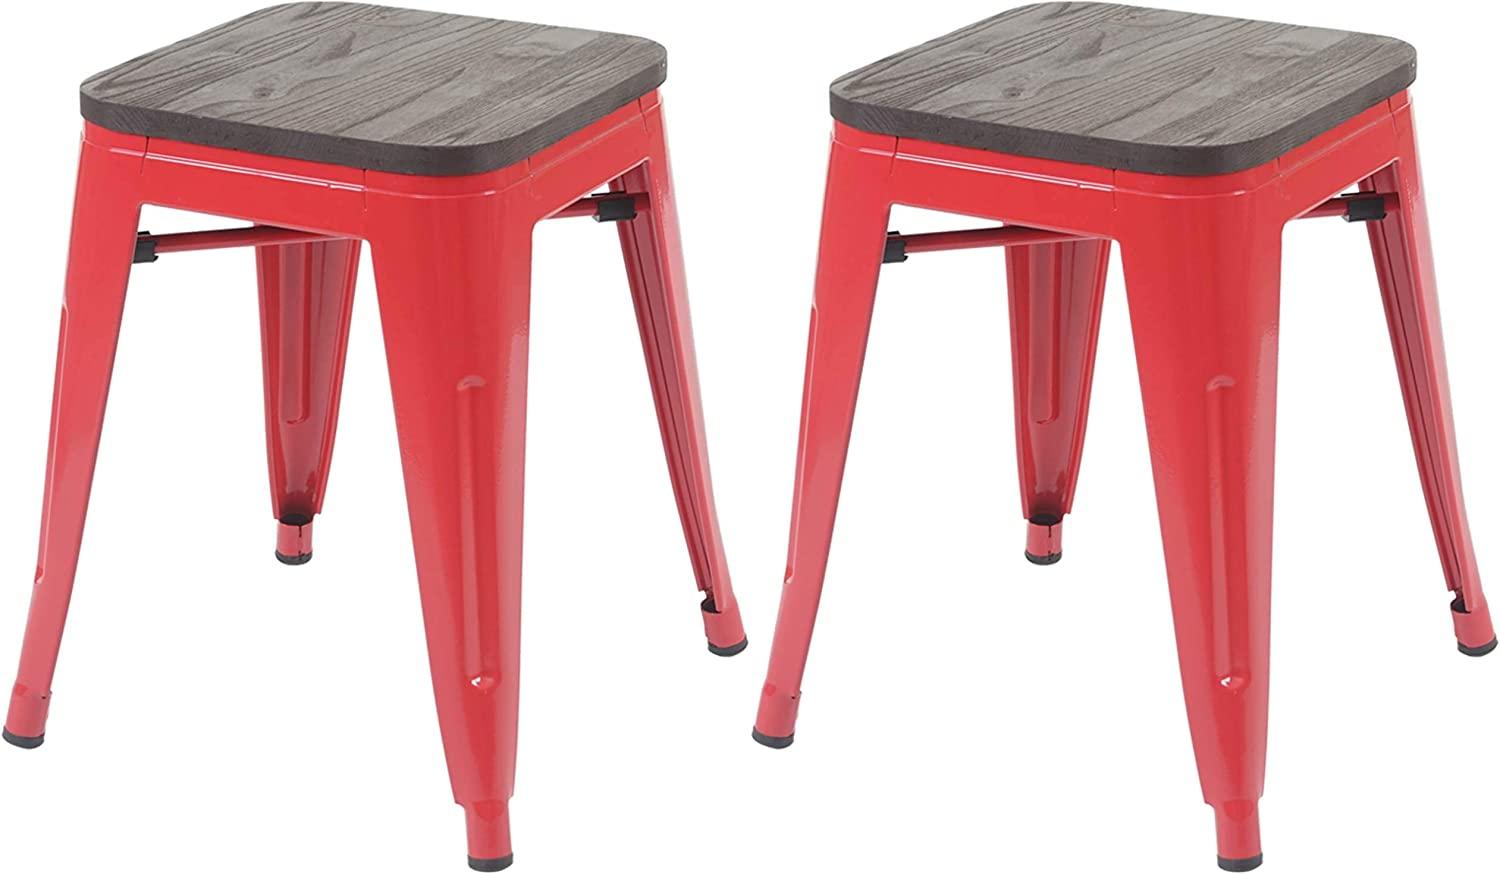 2er-Set Hocker HWC-A73 inkl. Holz-Sitzfläche, Metallhocker Sitzhocker, Metall Industriedesign stapelbar ~ rot Bild 1